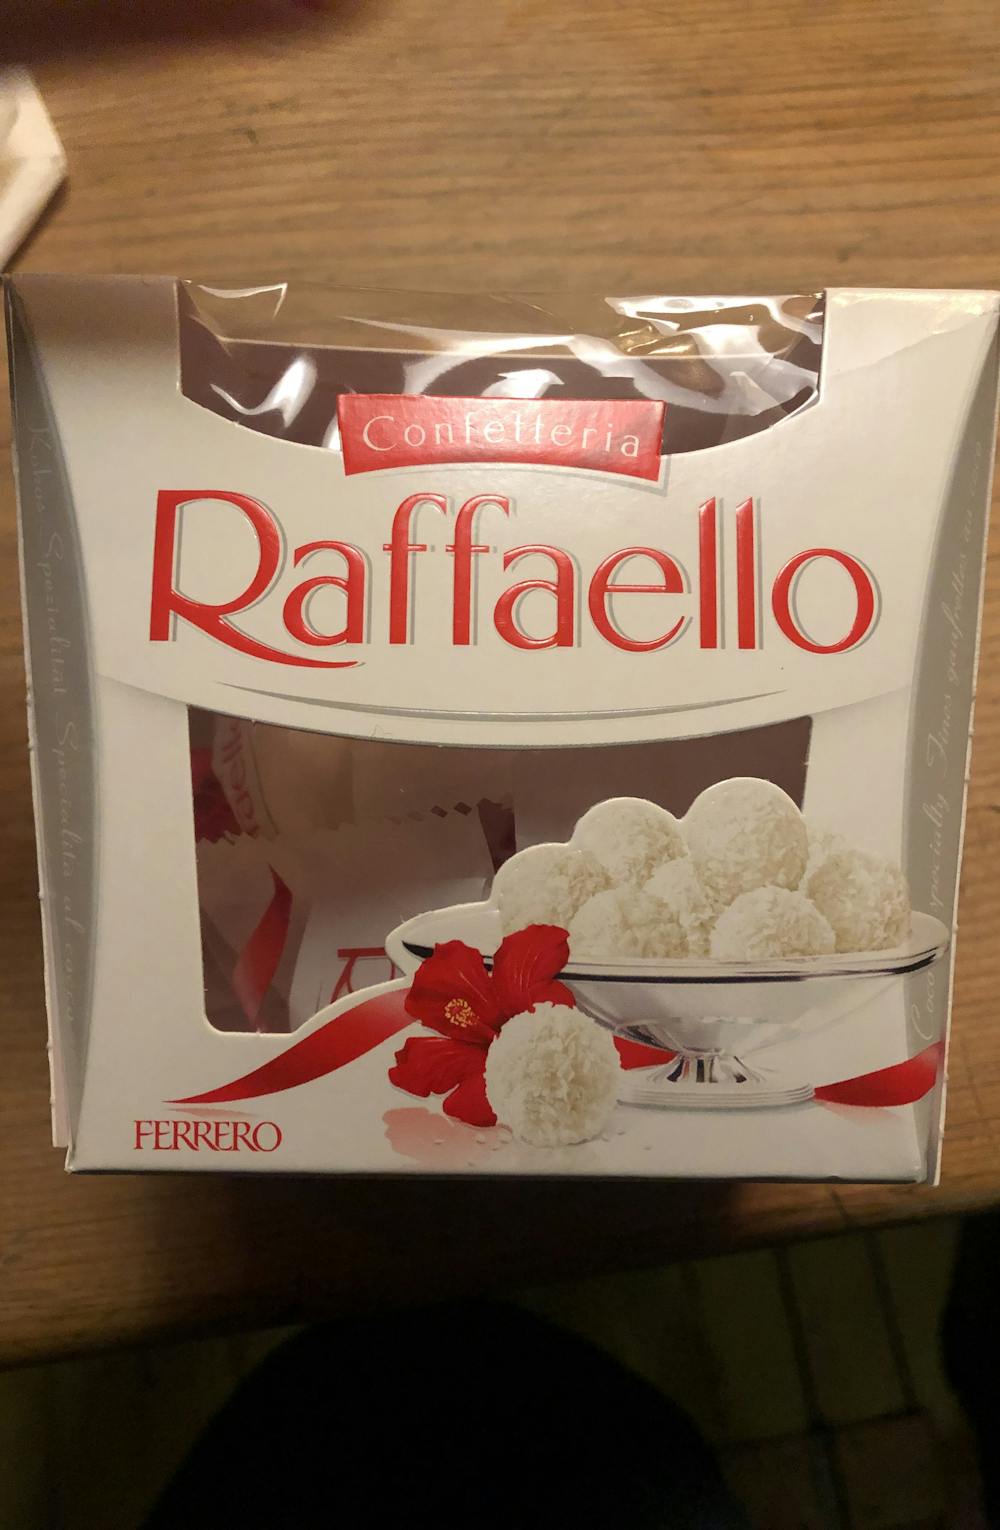 Raffaello, Confetteria